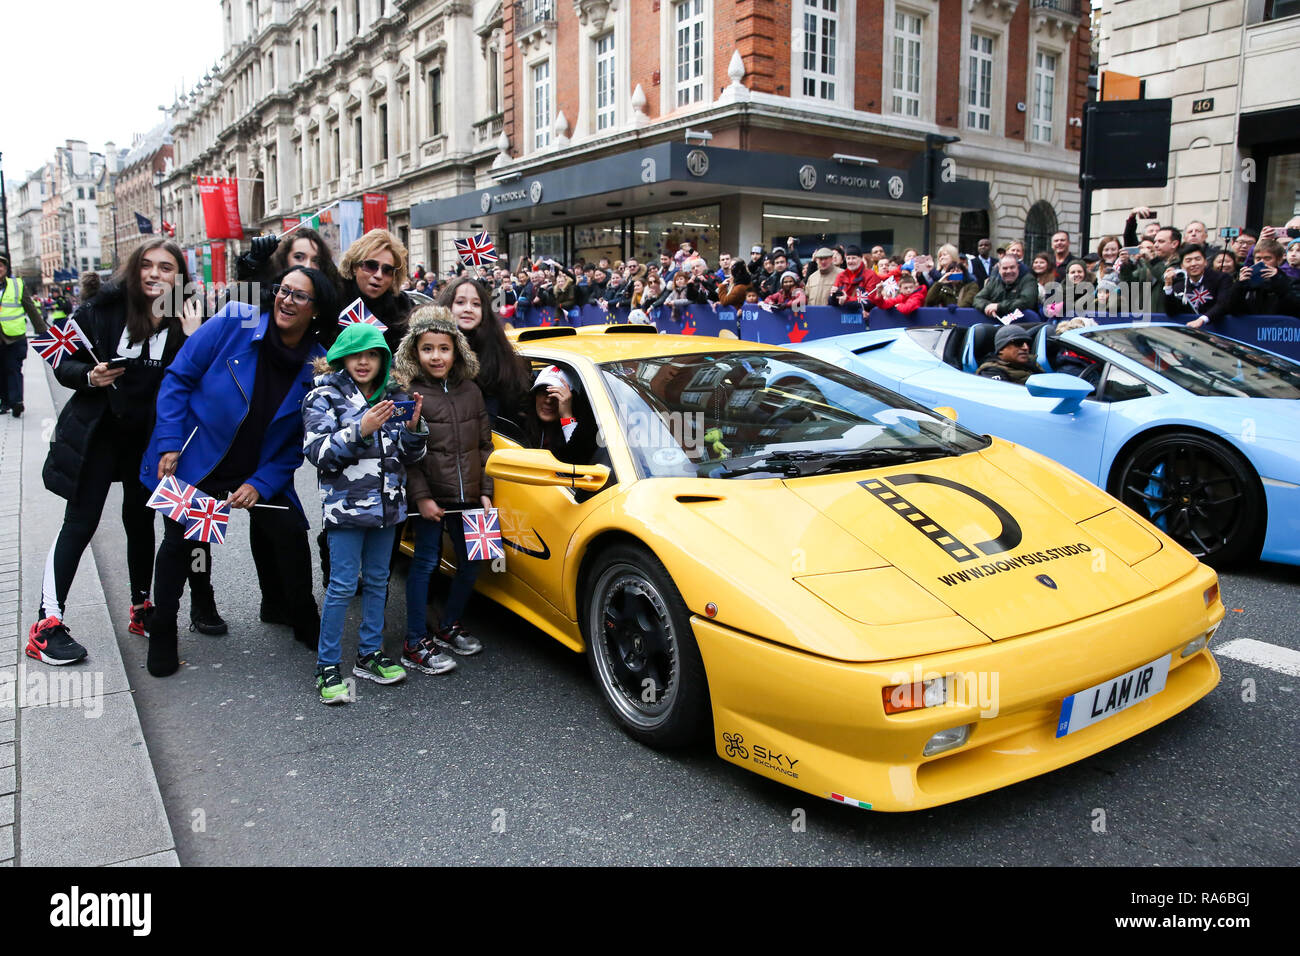 Menschen gesehen Neben einem Lamborghini während der Parade. Über eine halbe Million Zuschauer gesäumt, die 2,2 km Route von Piccadilly Circus, dem Parlament Square als Mehr als 8.000 Künstler aus 26 Ländern in Day Parade des 33. London des Neuen Jahres teilgenommen. Stockfoto